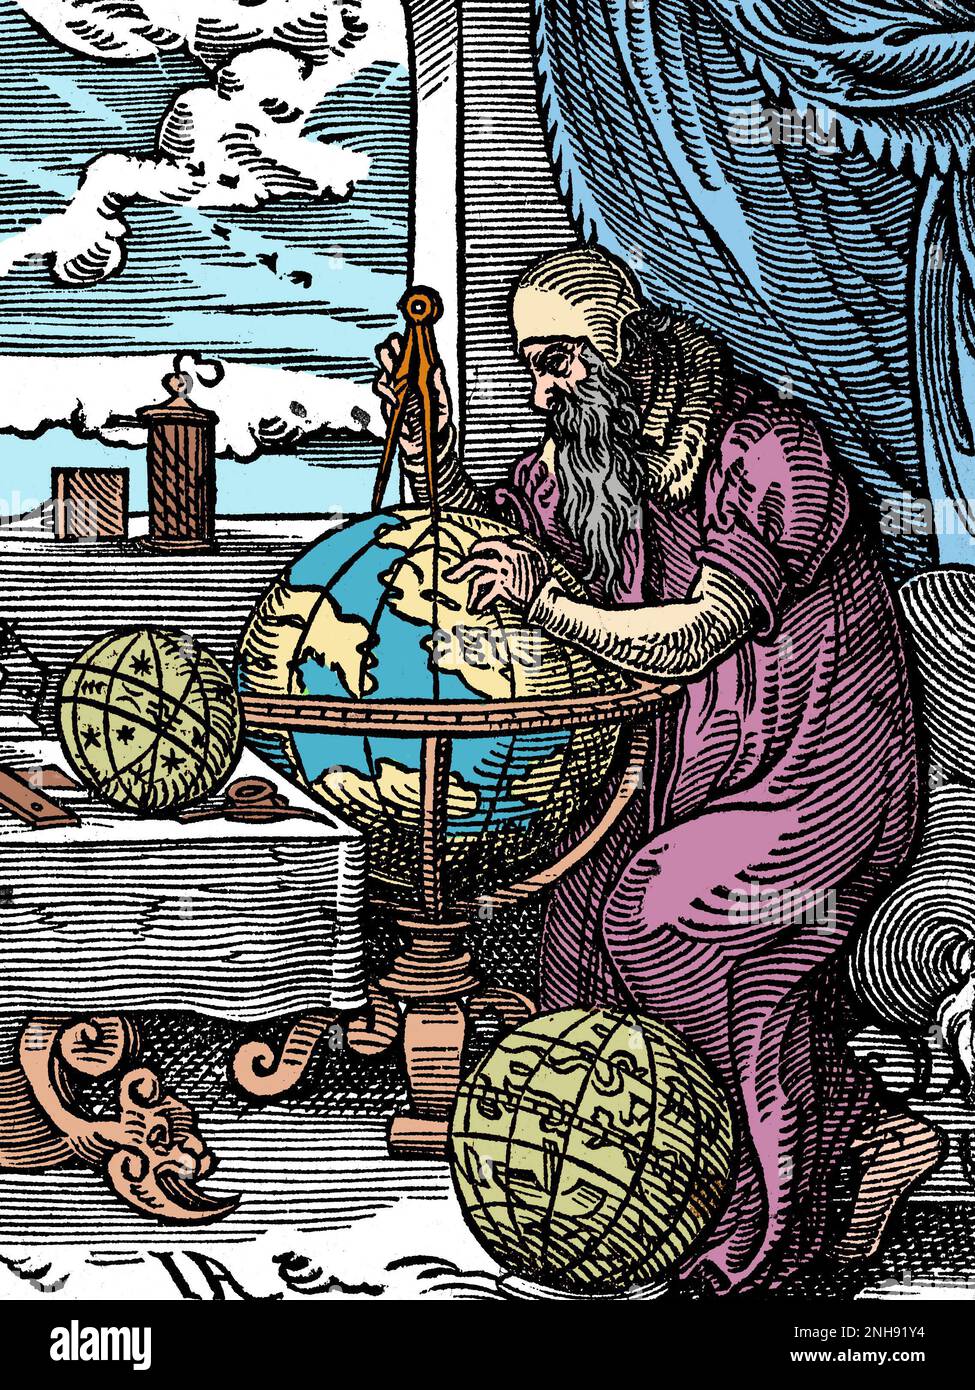 Un astronome et un astrologue dans son étude, traçant des points sur un globe avec une paire de diviseurs. Coupe de bois du Livre des métiers de Jost Amman, 1568. Colorisé. Banque D'Images